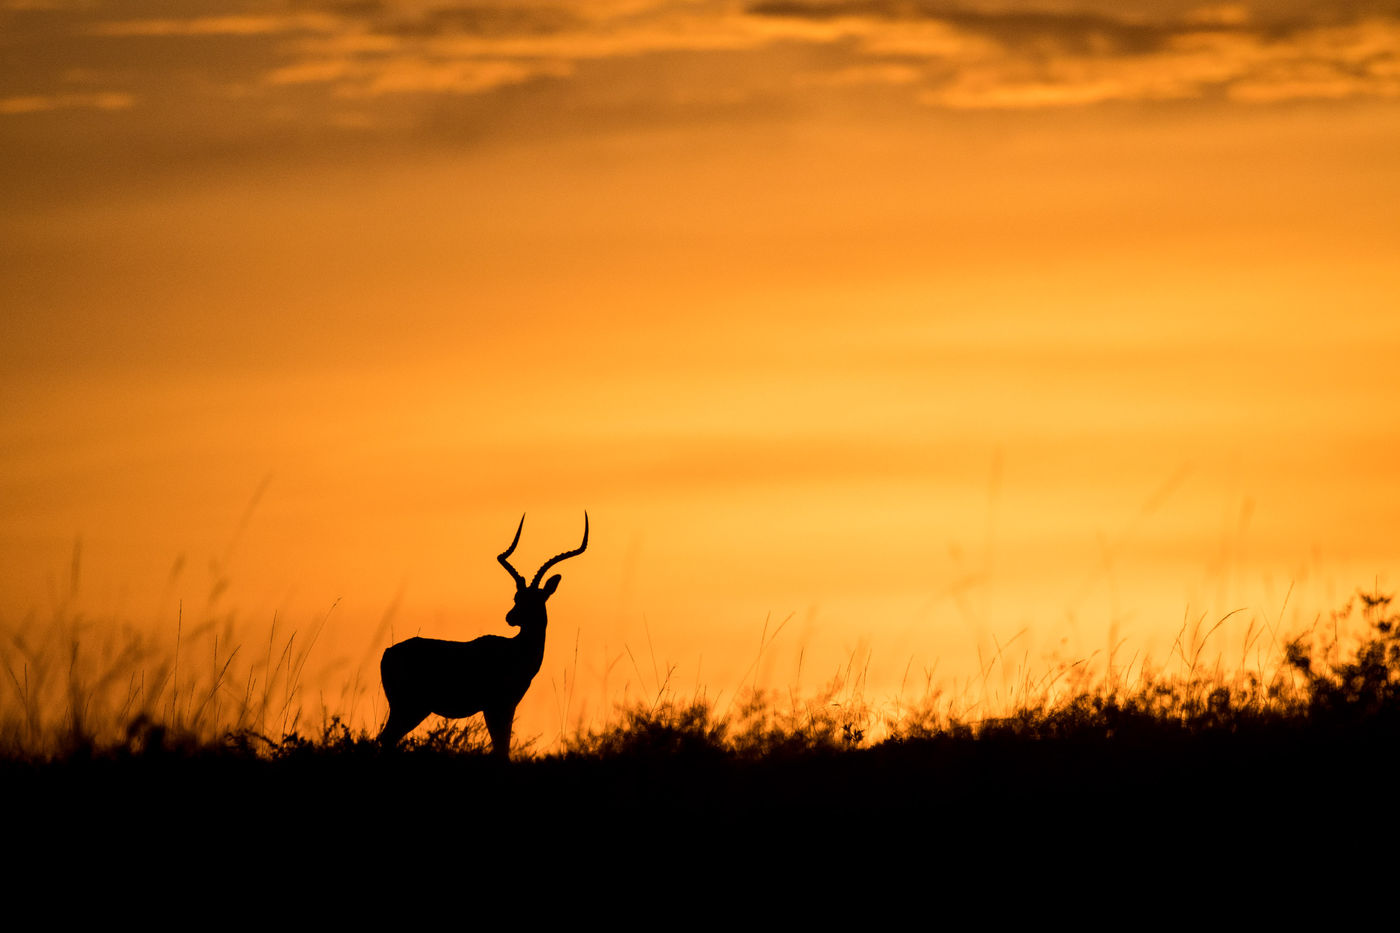 Het silhouet van een impala tegen een oranje lucht is een droombeeld. © Siska Meersman